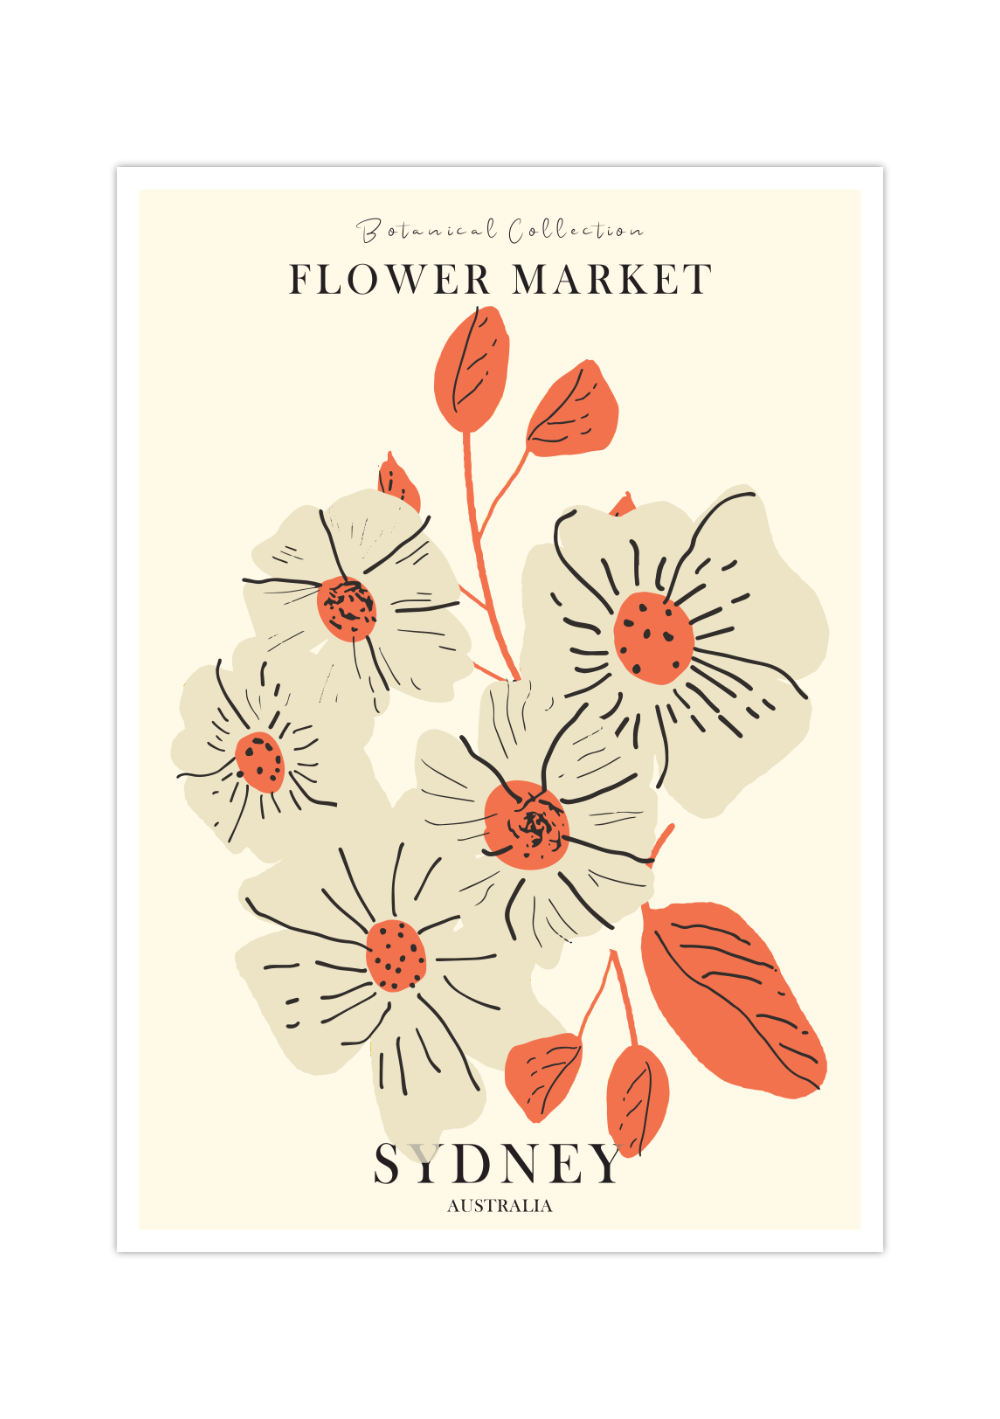 Das Poster ist ein fiktives Bild des Blumenmarktes in Sydney, Australien. 